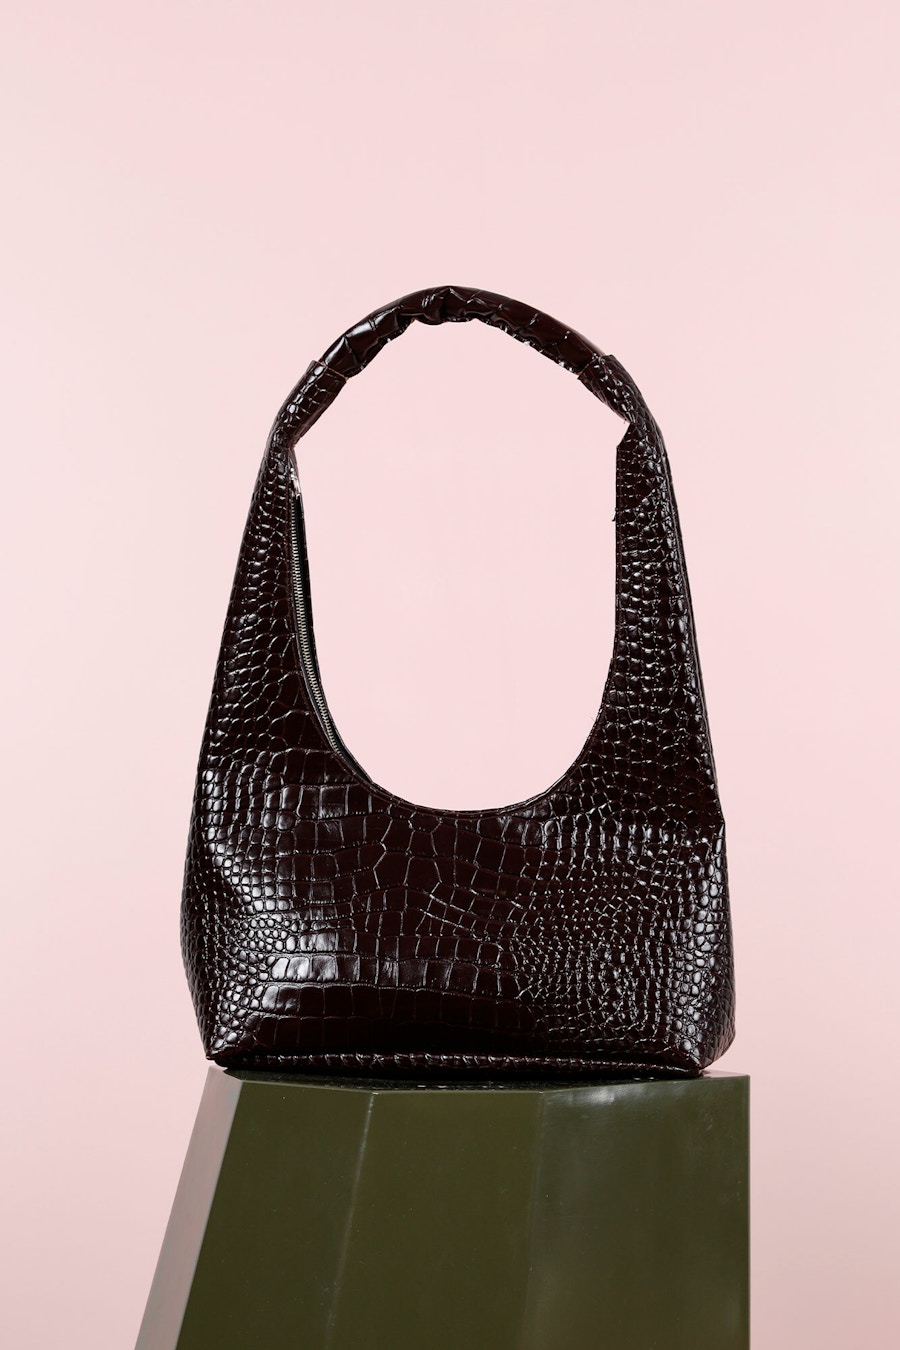 Maroon Croc Handbag Stool